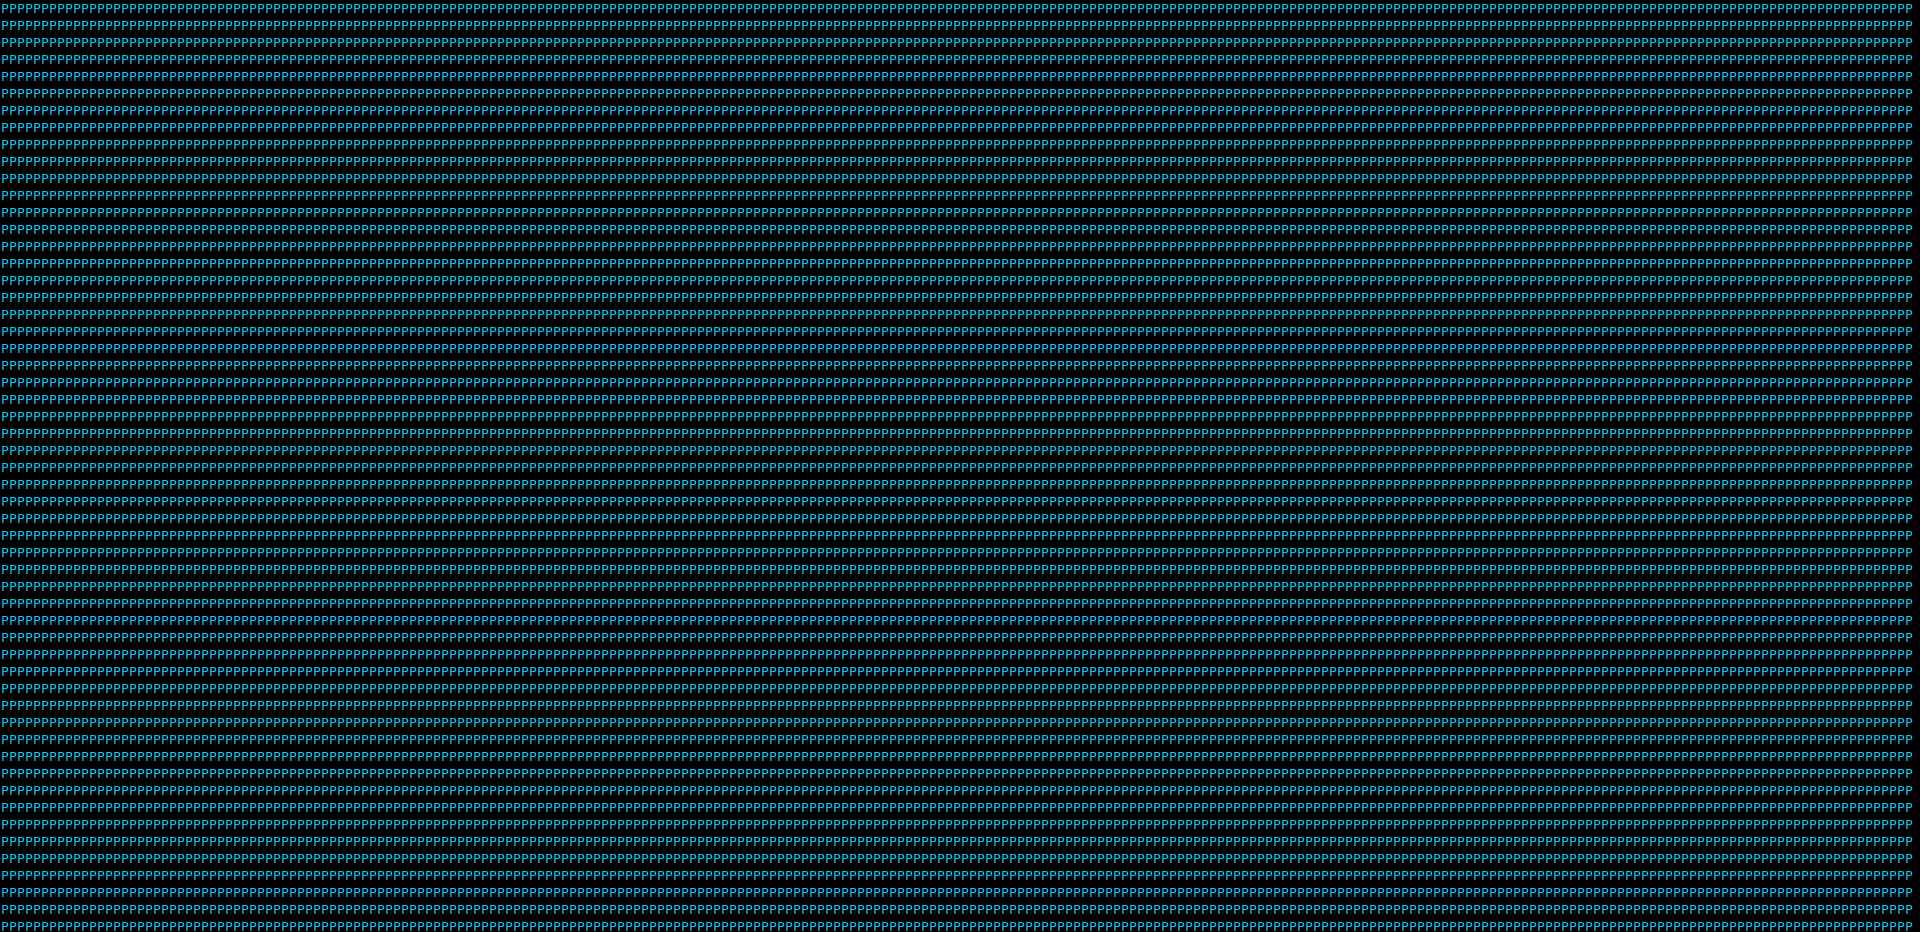 Zima Blue (with terminal width)